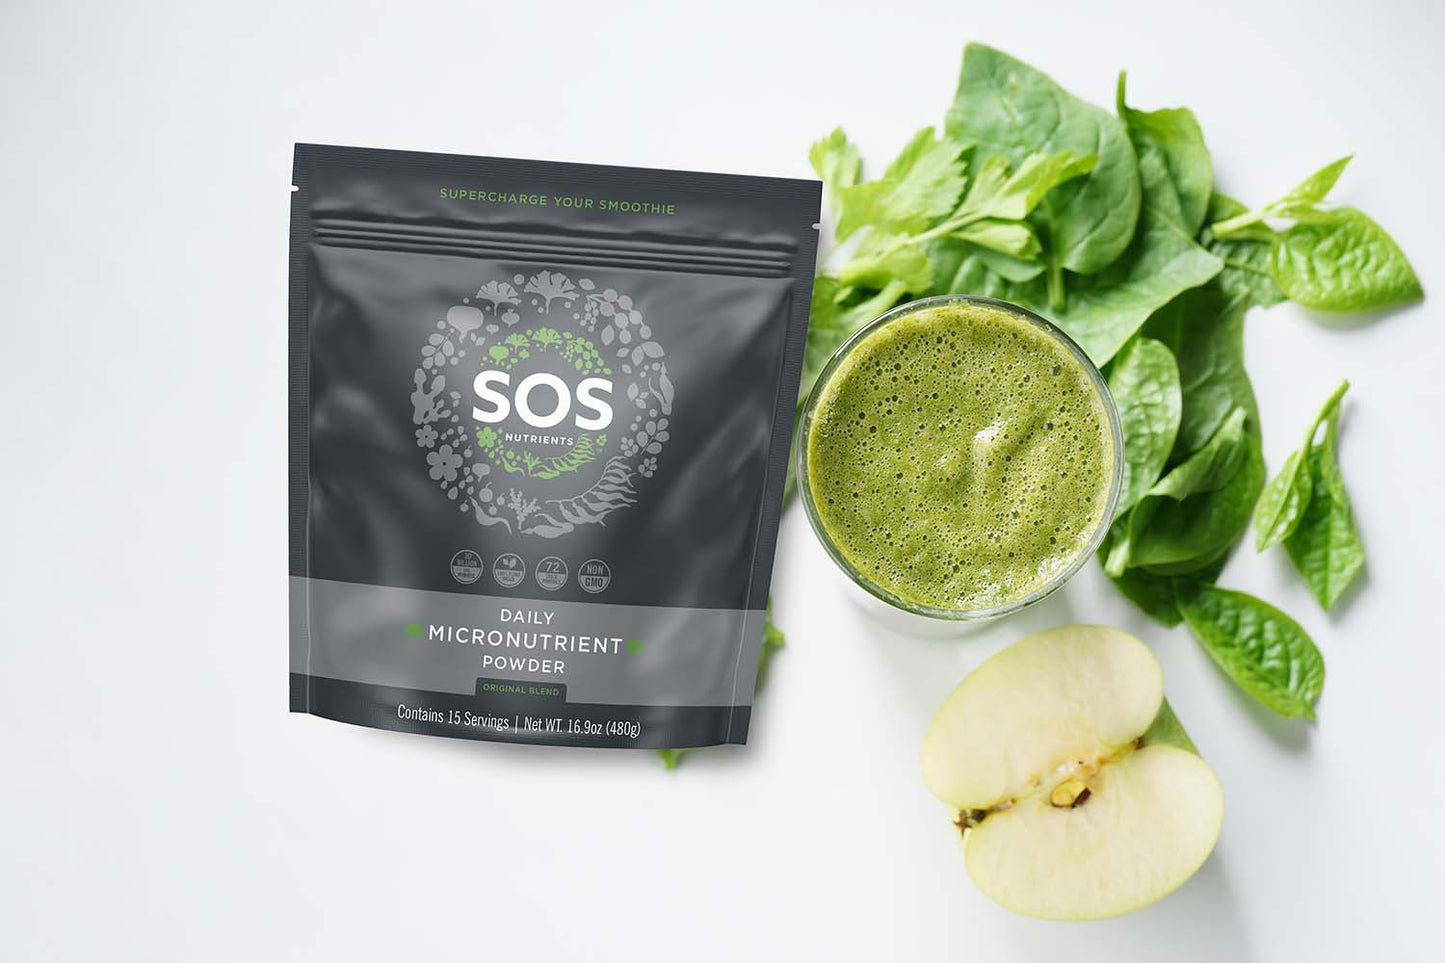 SOS Daily Micronutrient Powder Original Blend